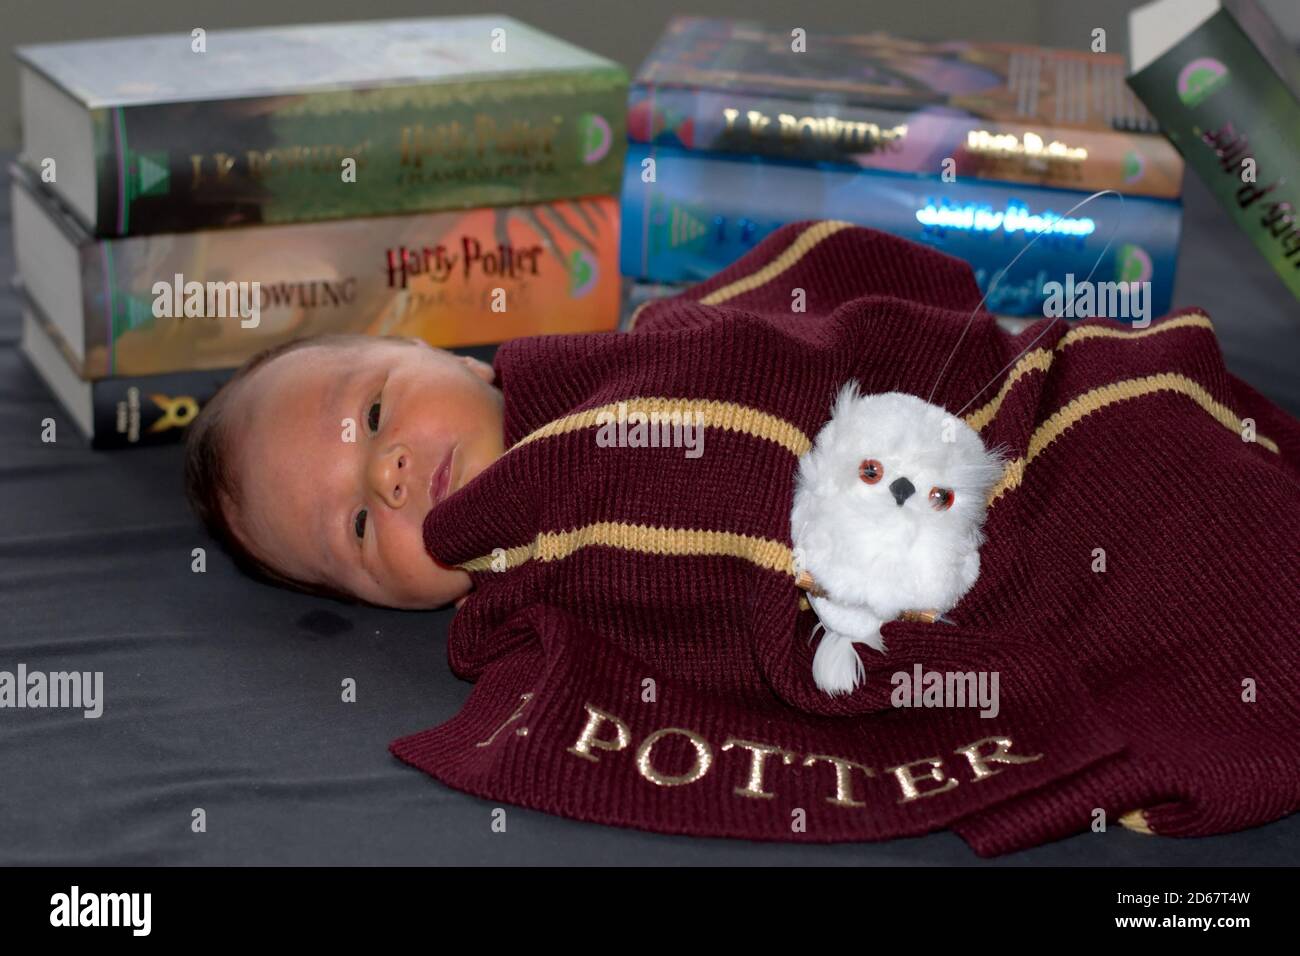 Bambino neonato in costume per Halloween con una sciarpa E libri